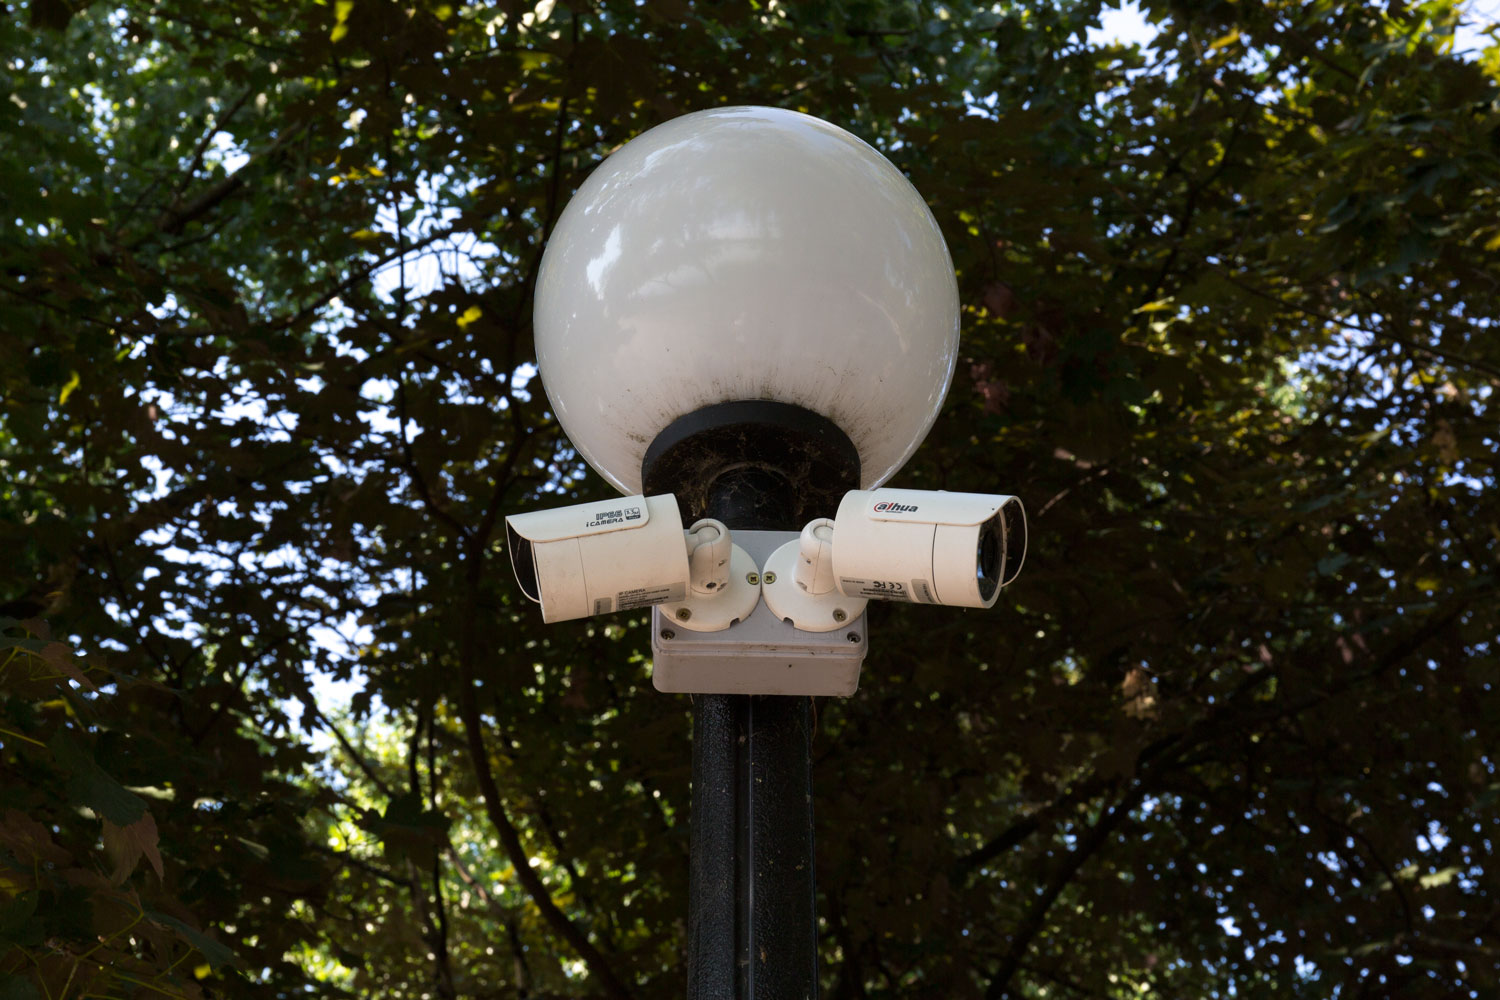 Kérdéses törvényességű módon üzemeltet közterületi térfigyelő kamerákat egy önkormányzati cég Nyíregyházán